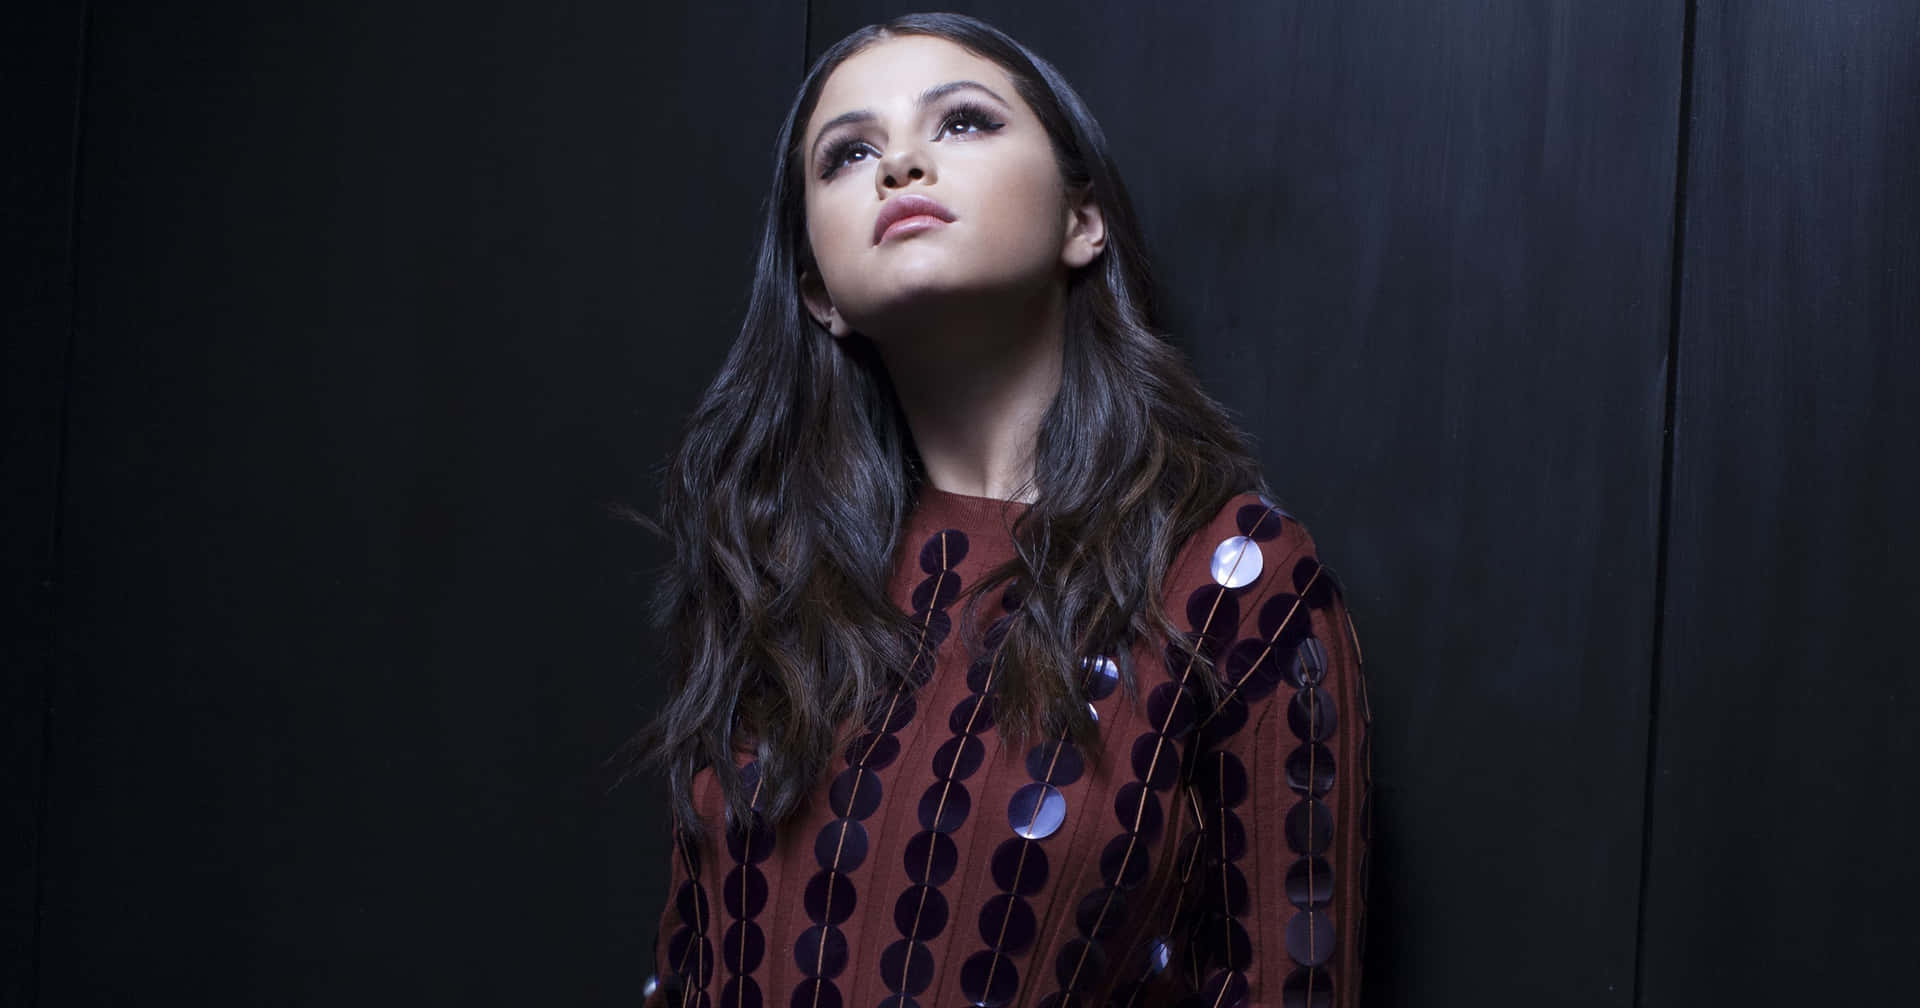 Sängerinund Songwriter Selena Gomez Genießt Das Rampenlicht.